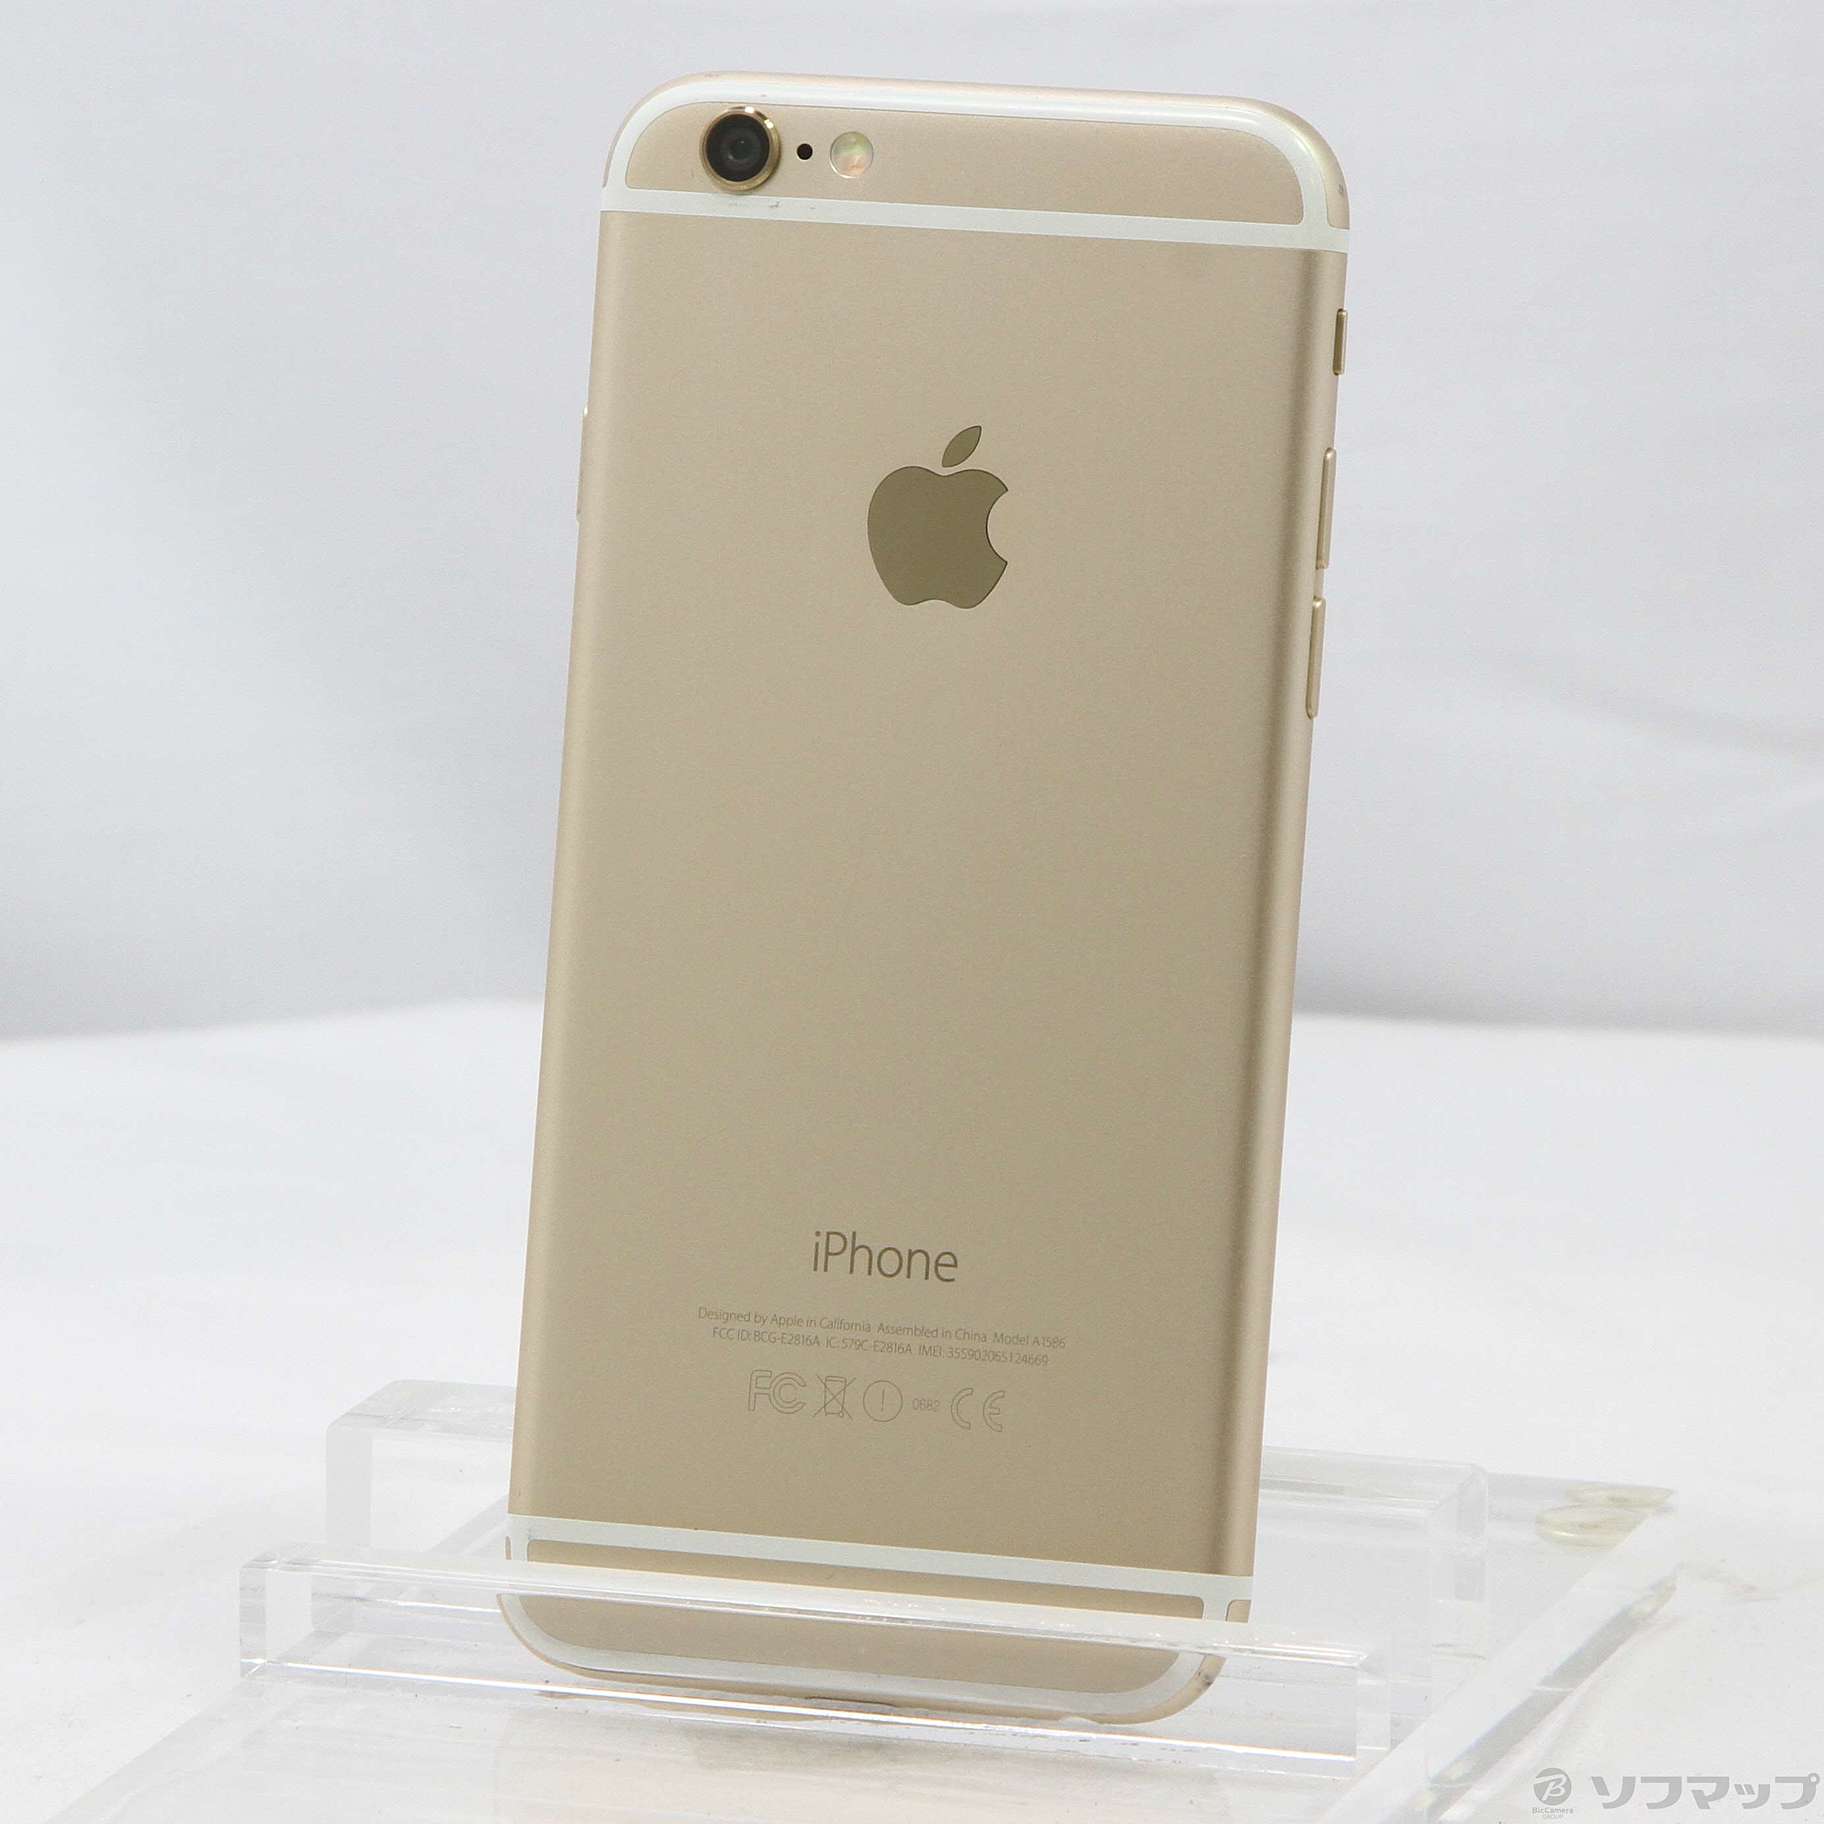 iPhone 6 16GB gold SoftBank www.krzysztofbialy.com